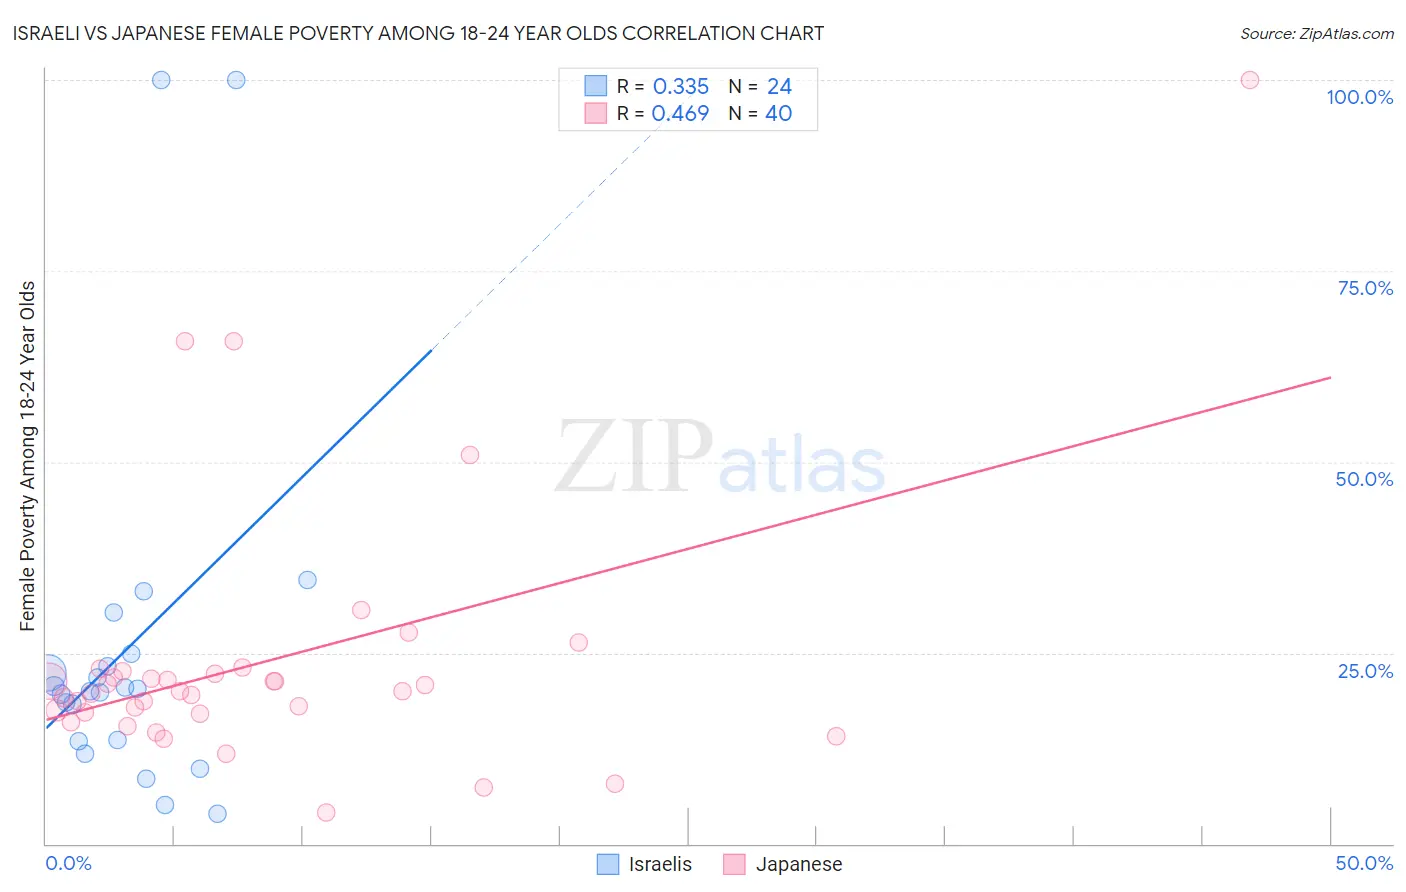 Israeli vs Japanese Female Poverty Among 18-24 Year Olds